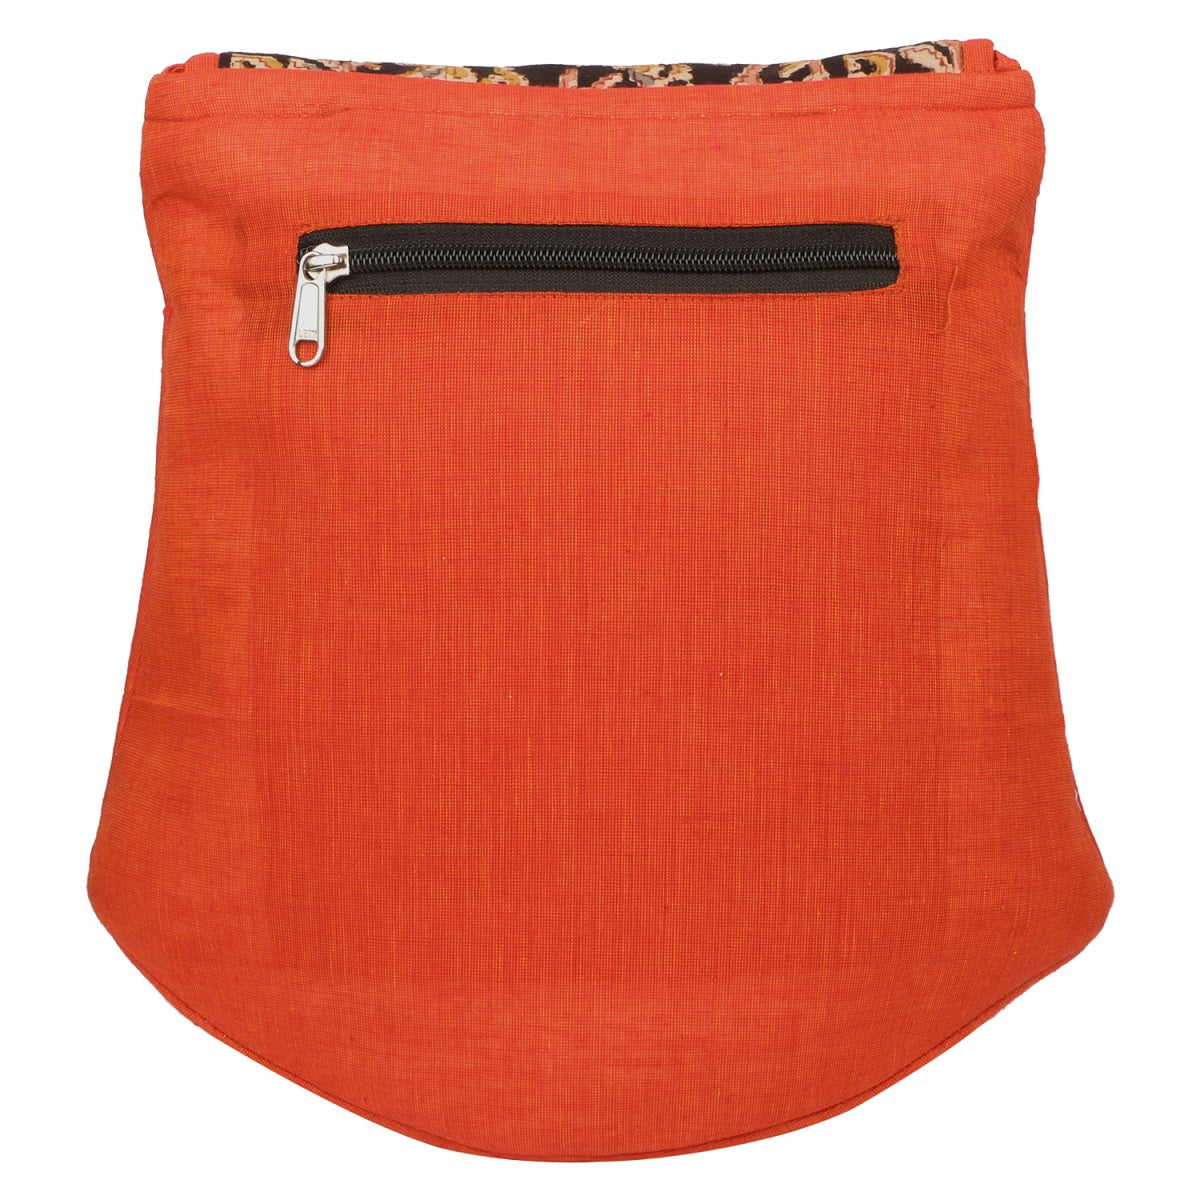 Shaped Sling Bag - Orange/Black